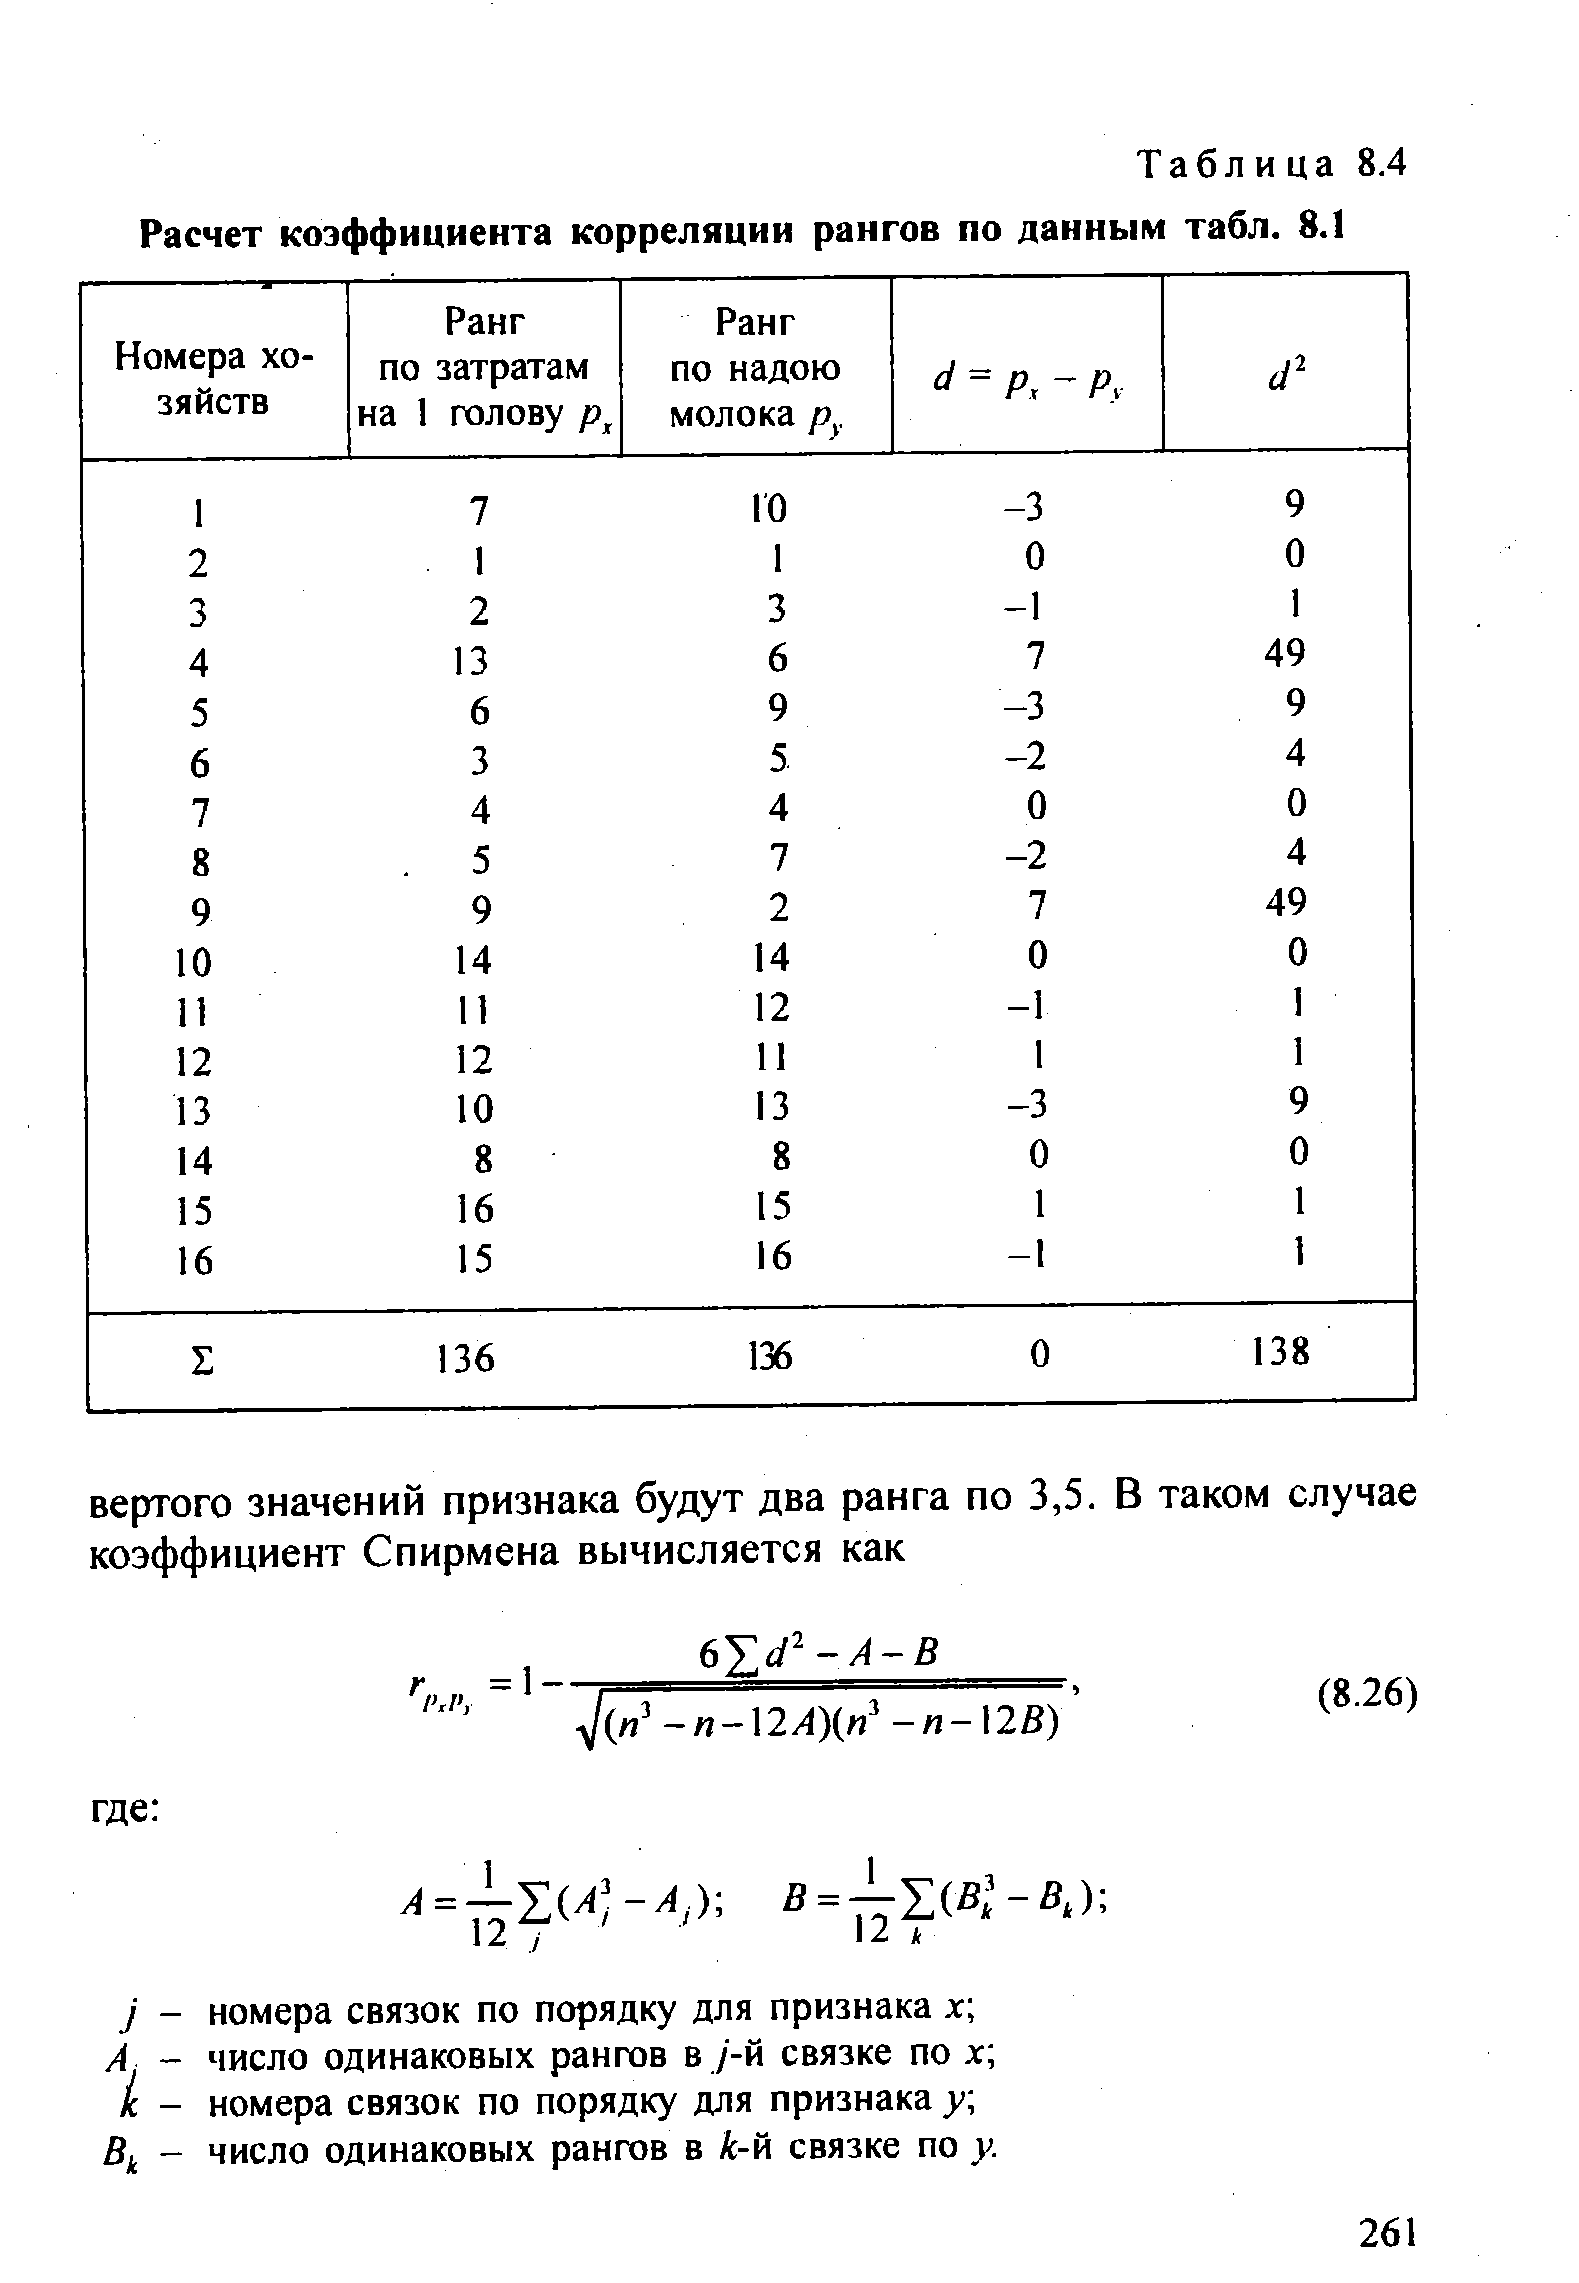 Таблица 8.4 Расчет коэффициента корреляции рангов по данным табл. 8.1
